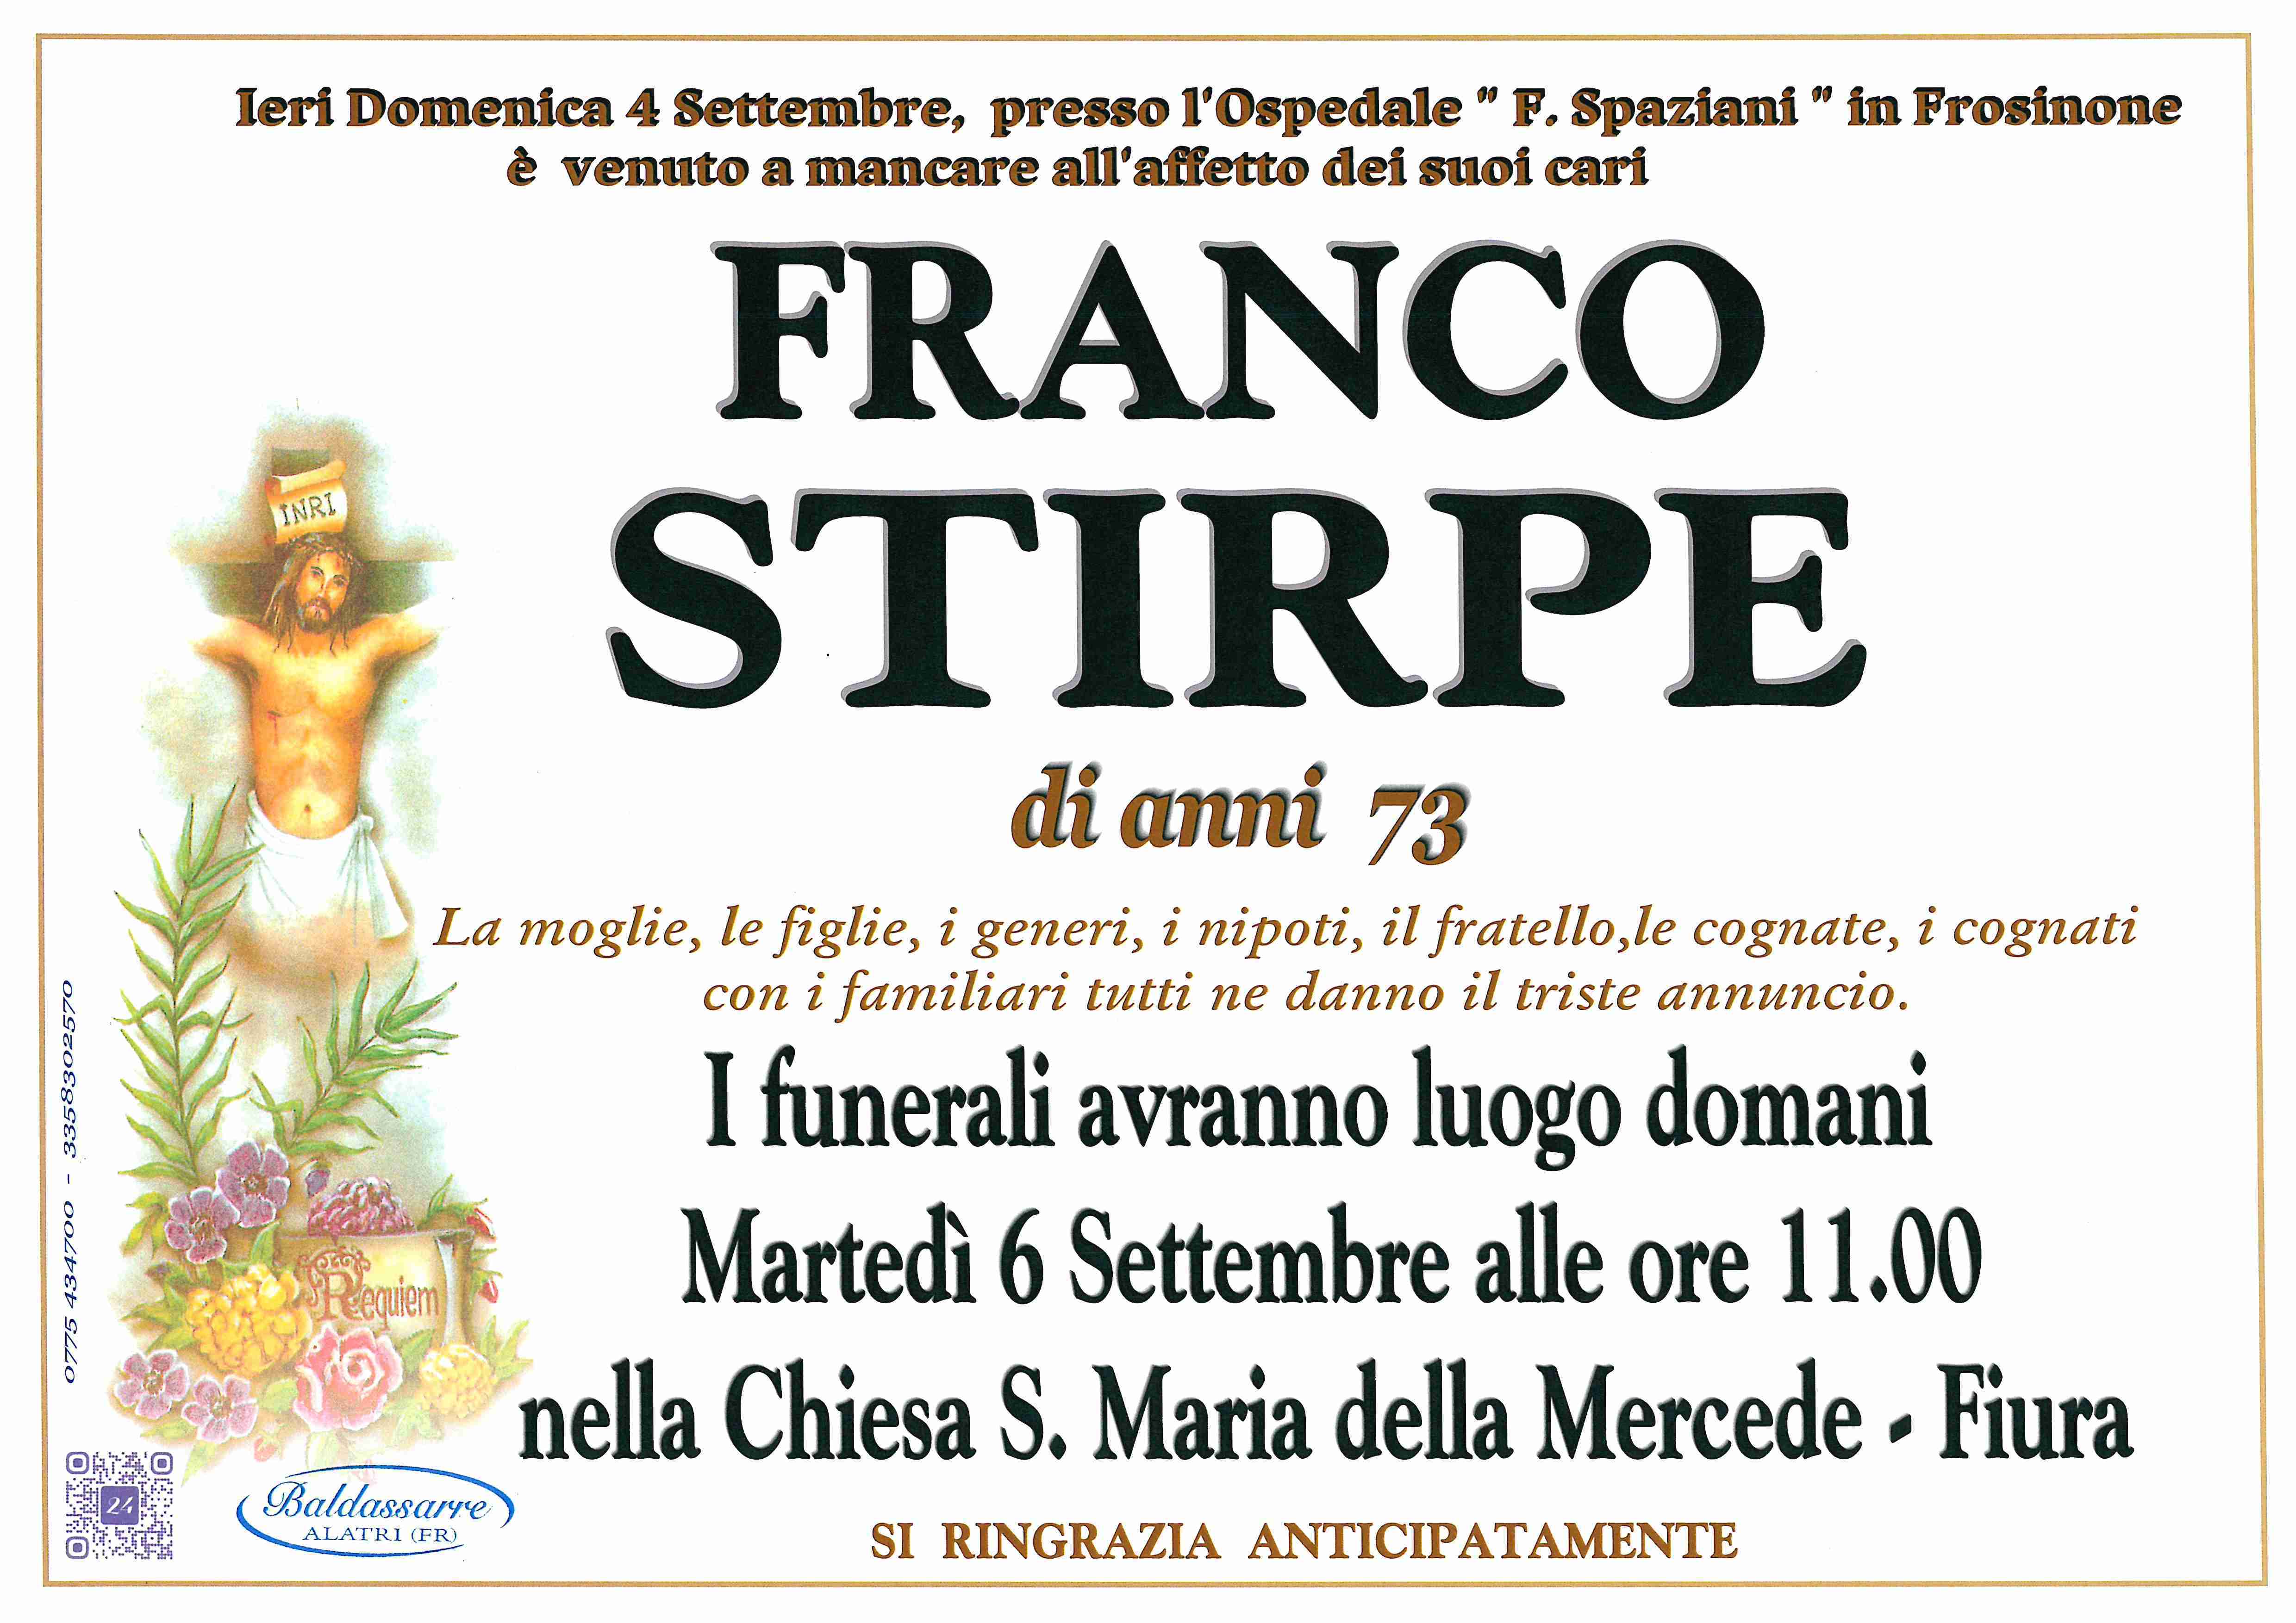 Franco Stirpe